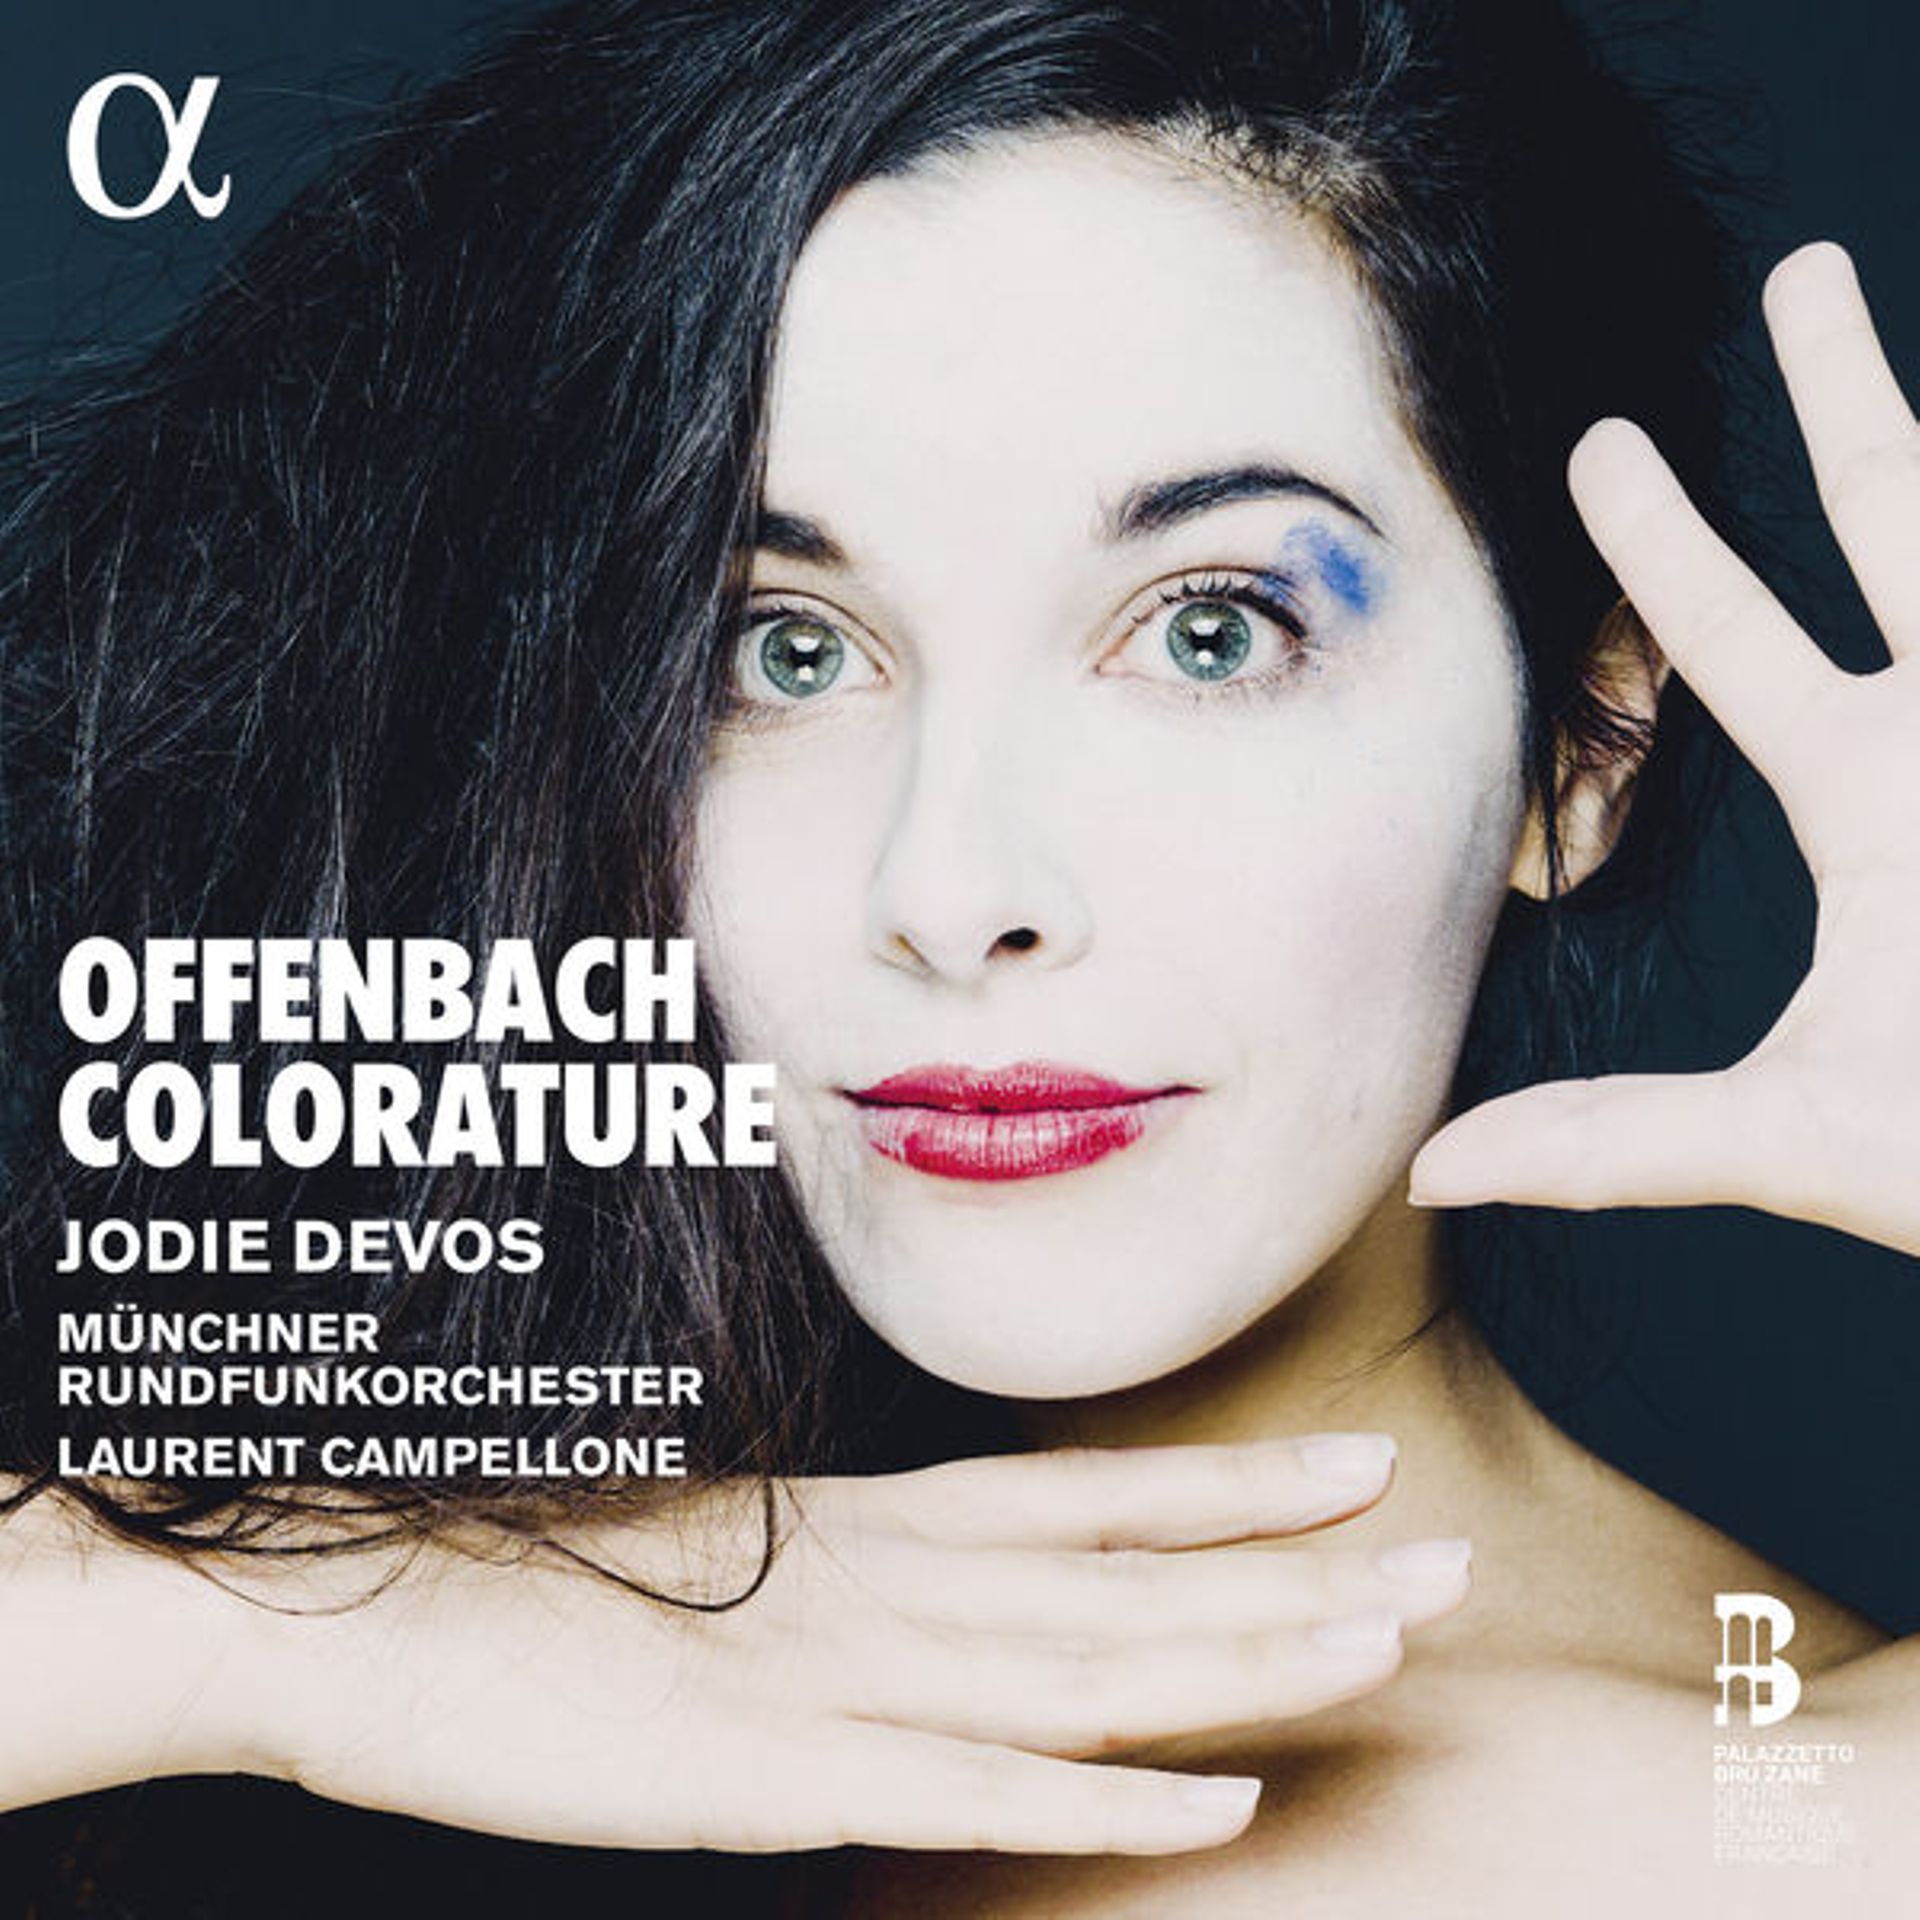 Jacques Offenbach - Colorature  par Jodie Devos, Münchner Rundfunkorchester, Laurent Campellone chez Alpha